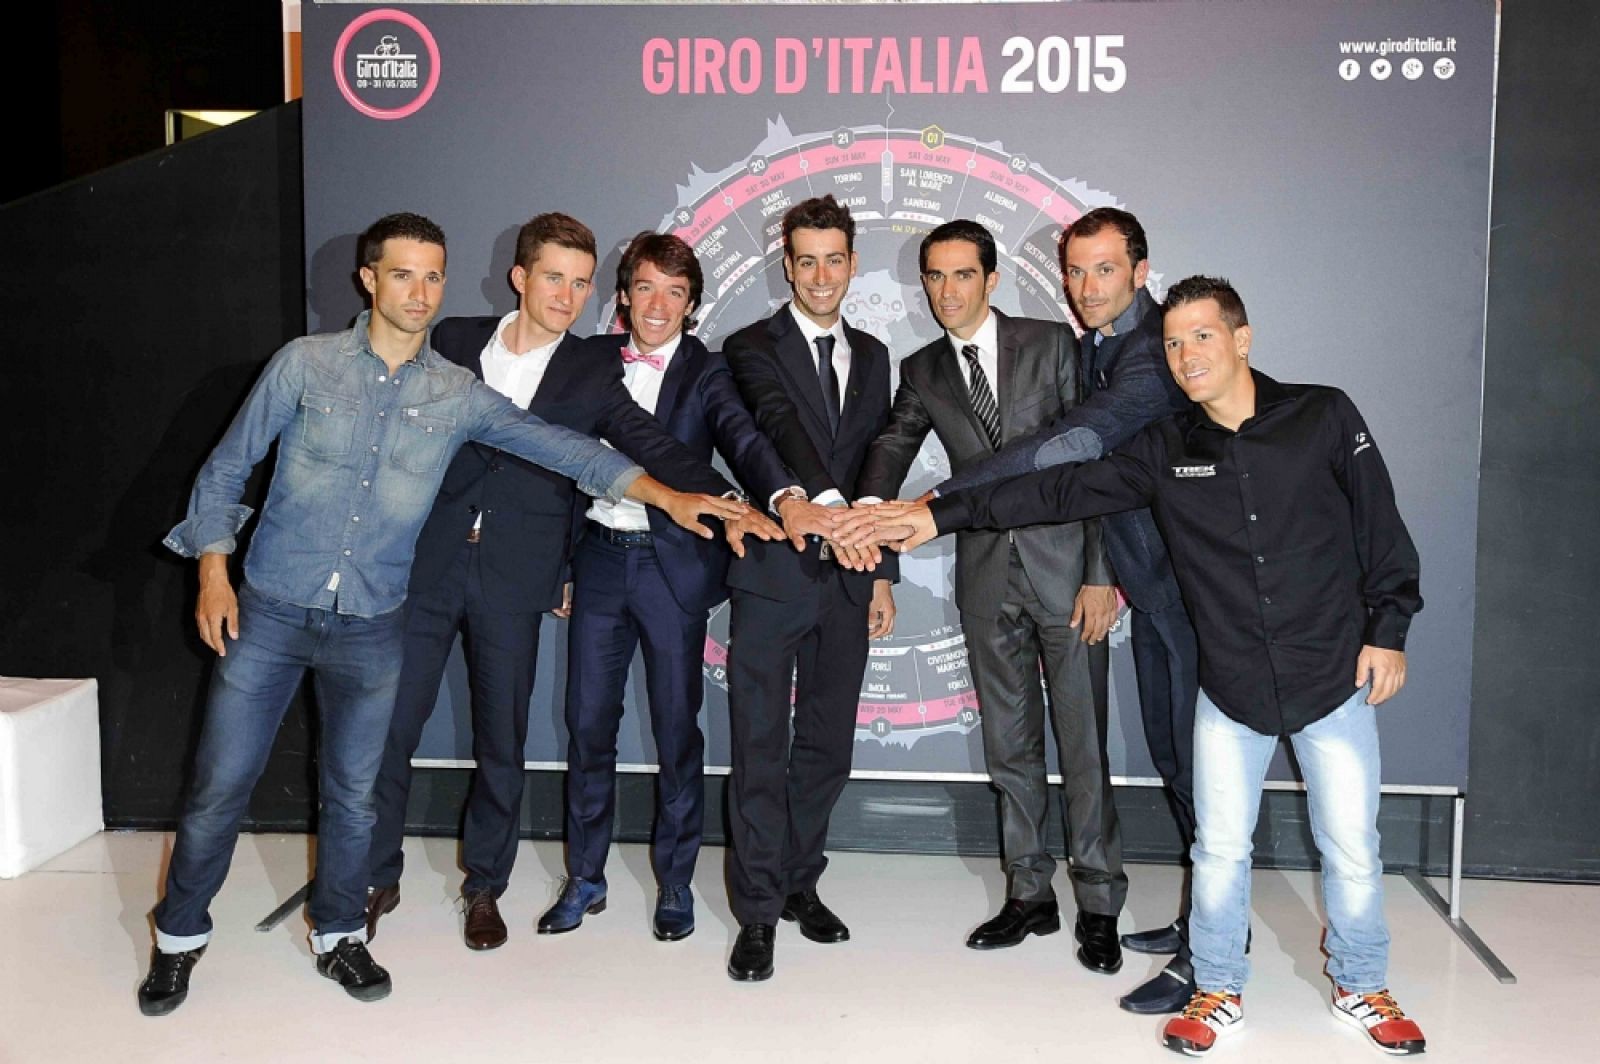 Imagen de los corredores que asistieron a la presentación del Giro 2015.